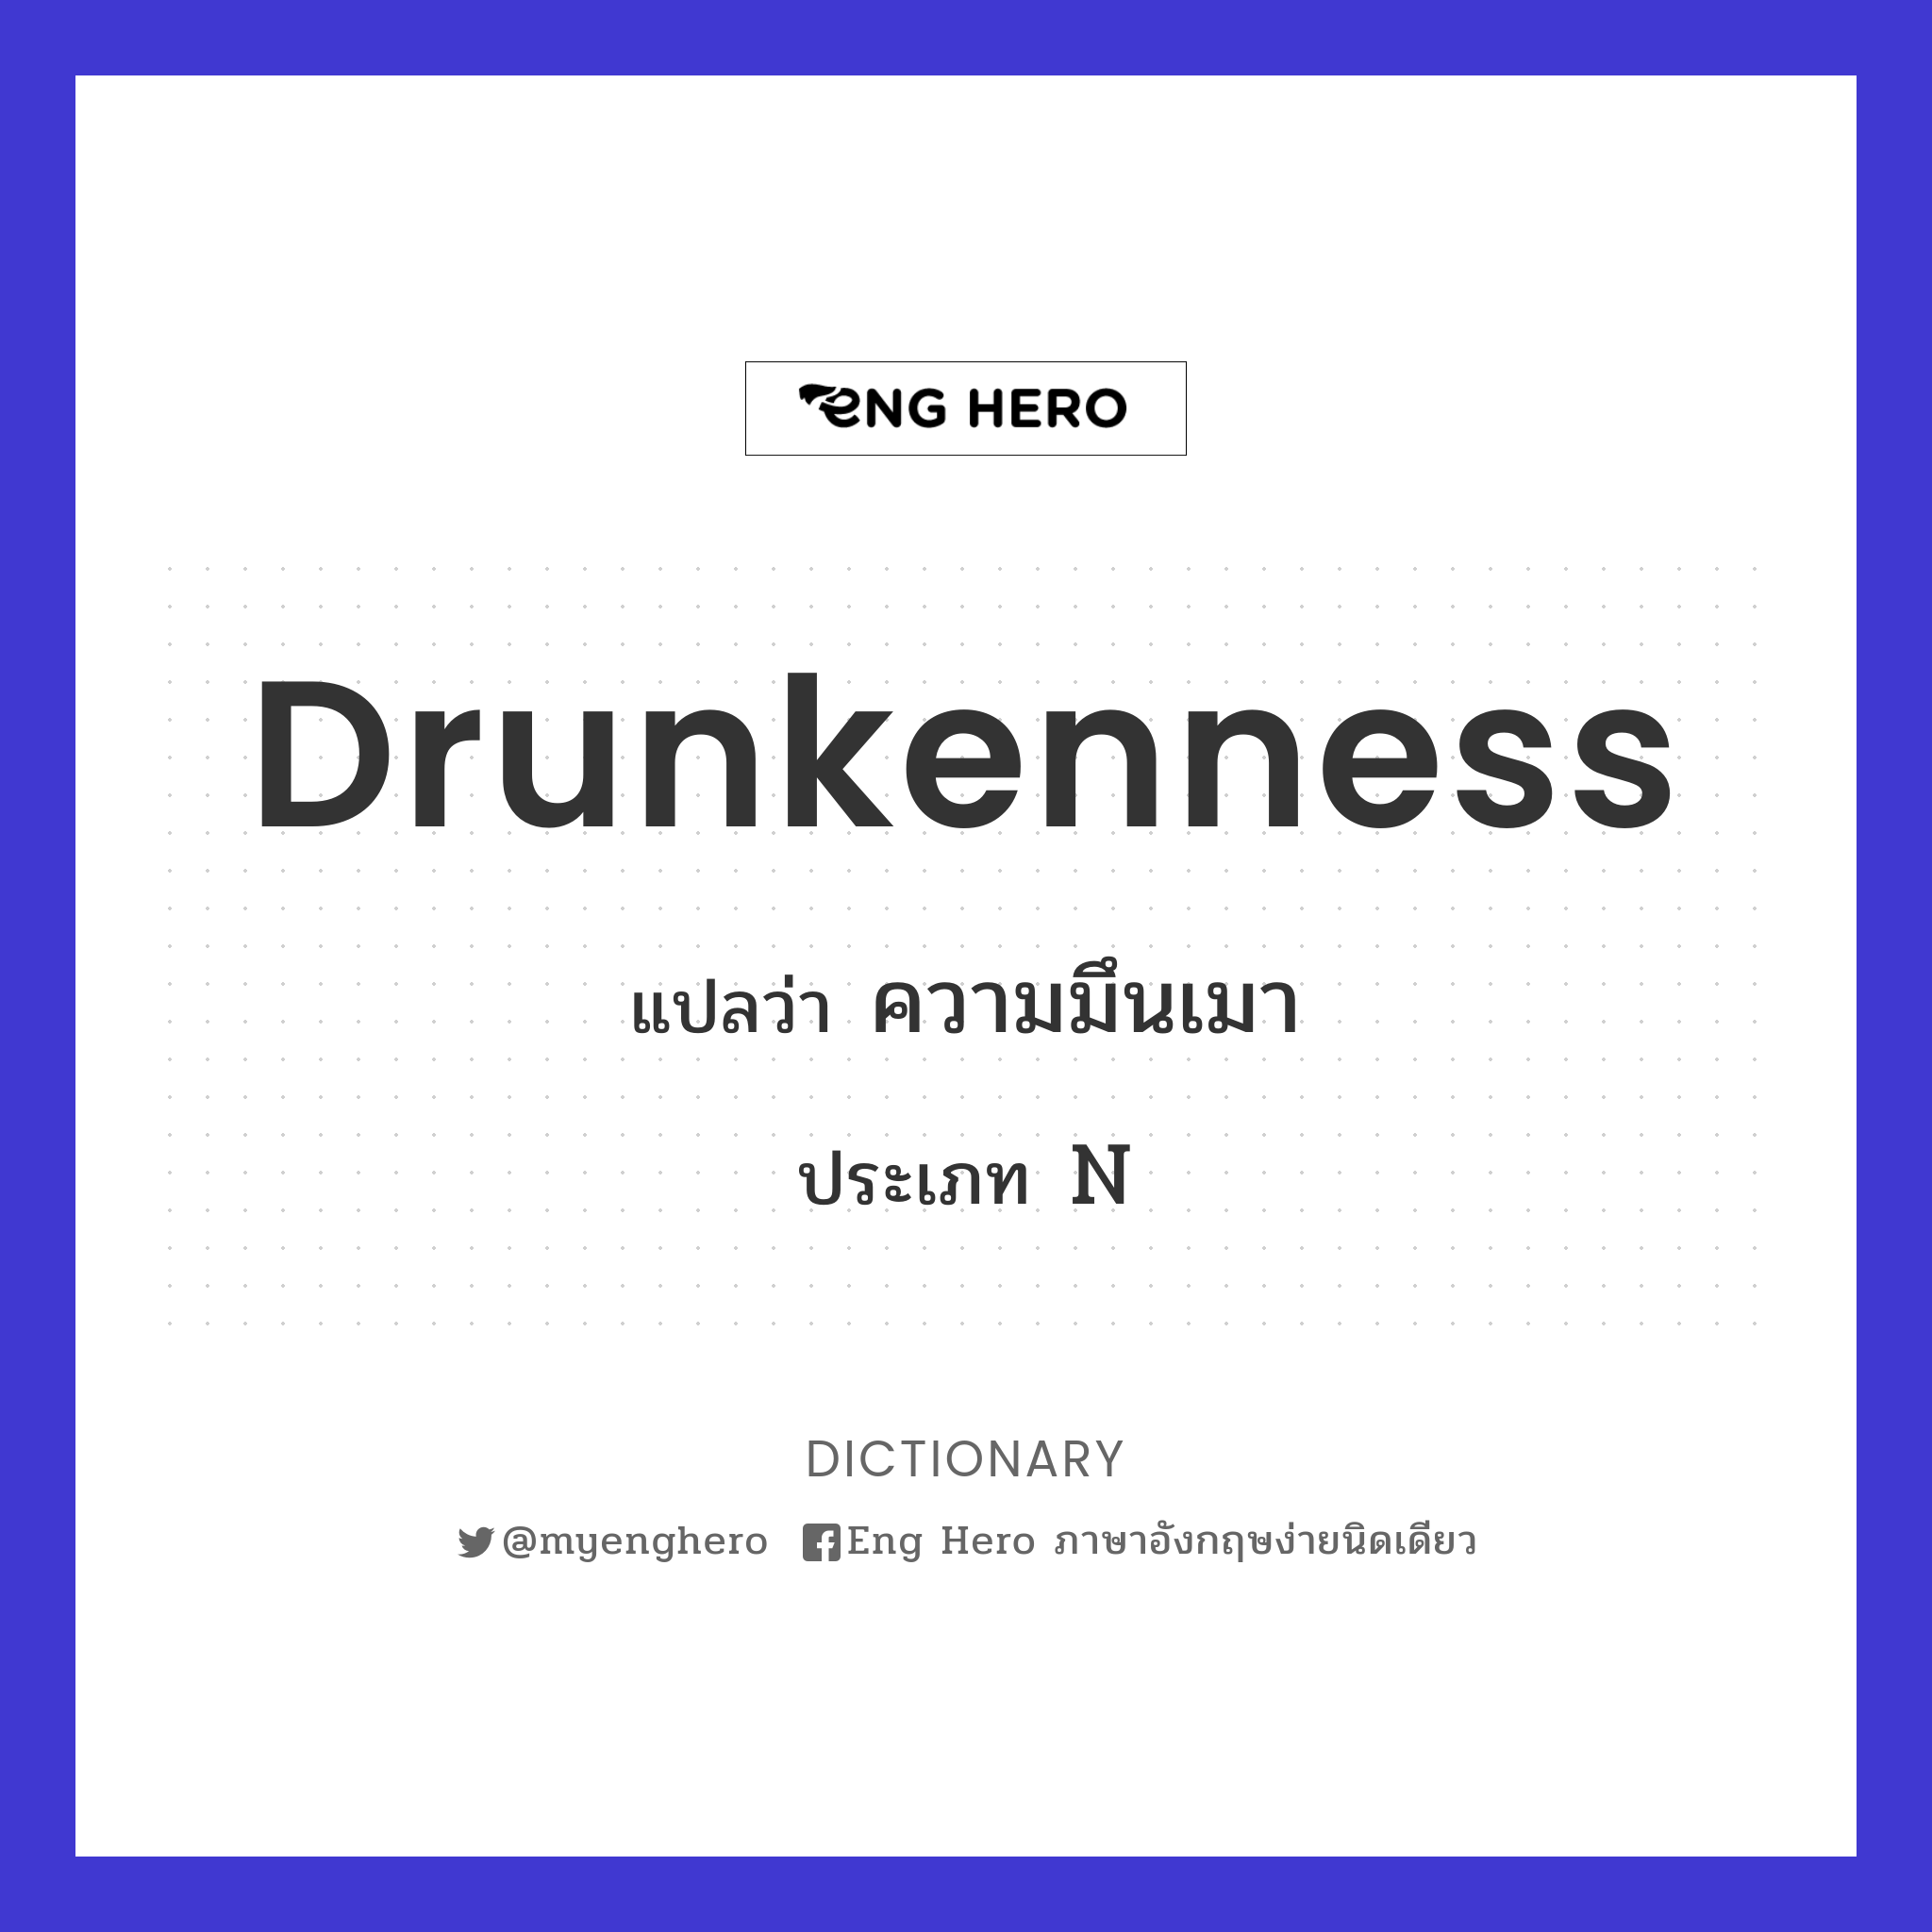 drunkenness